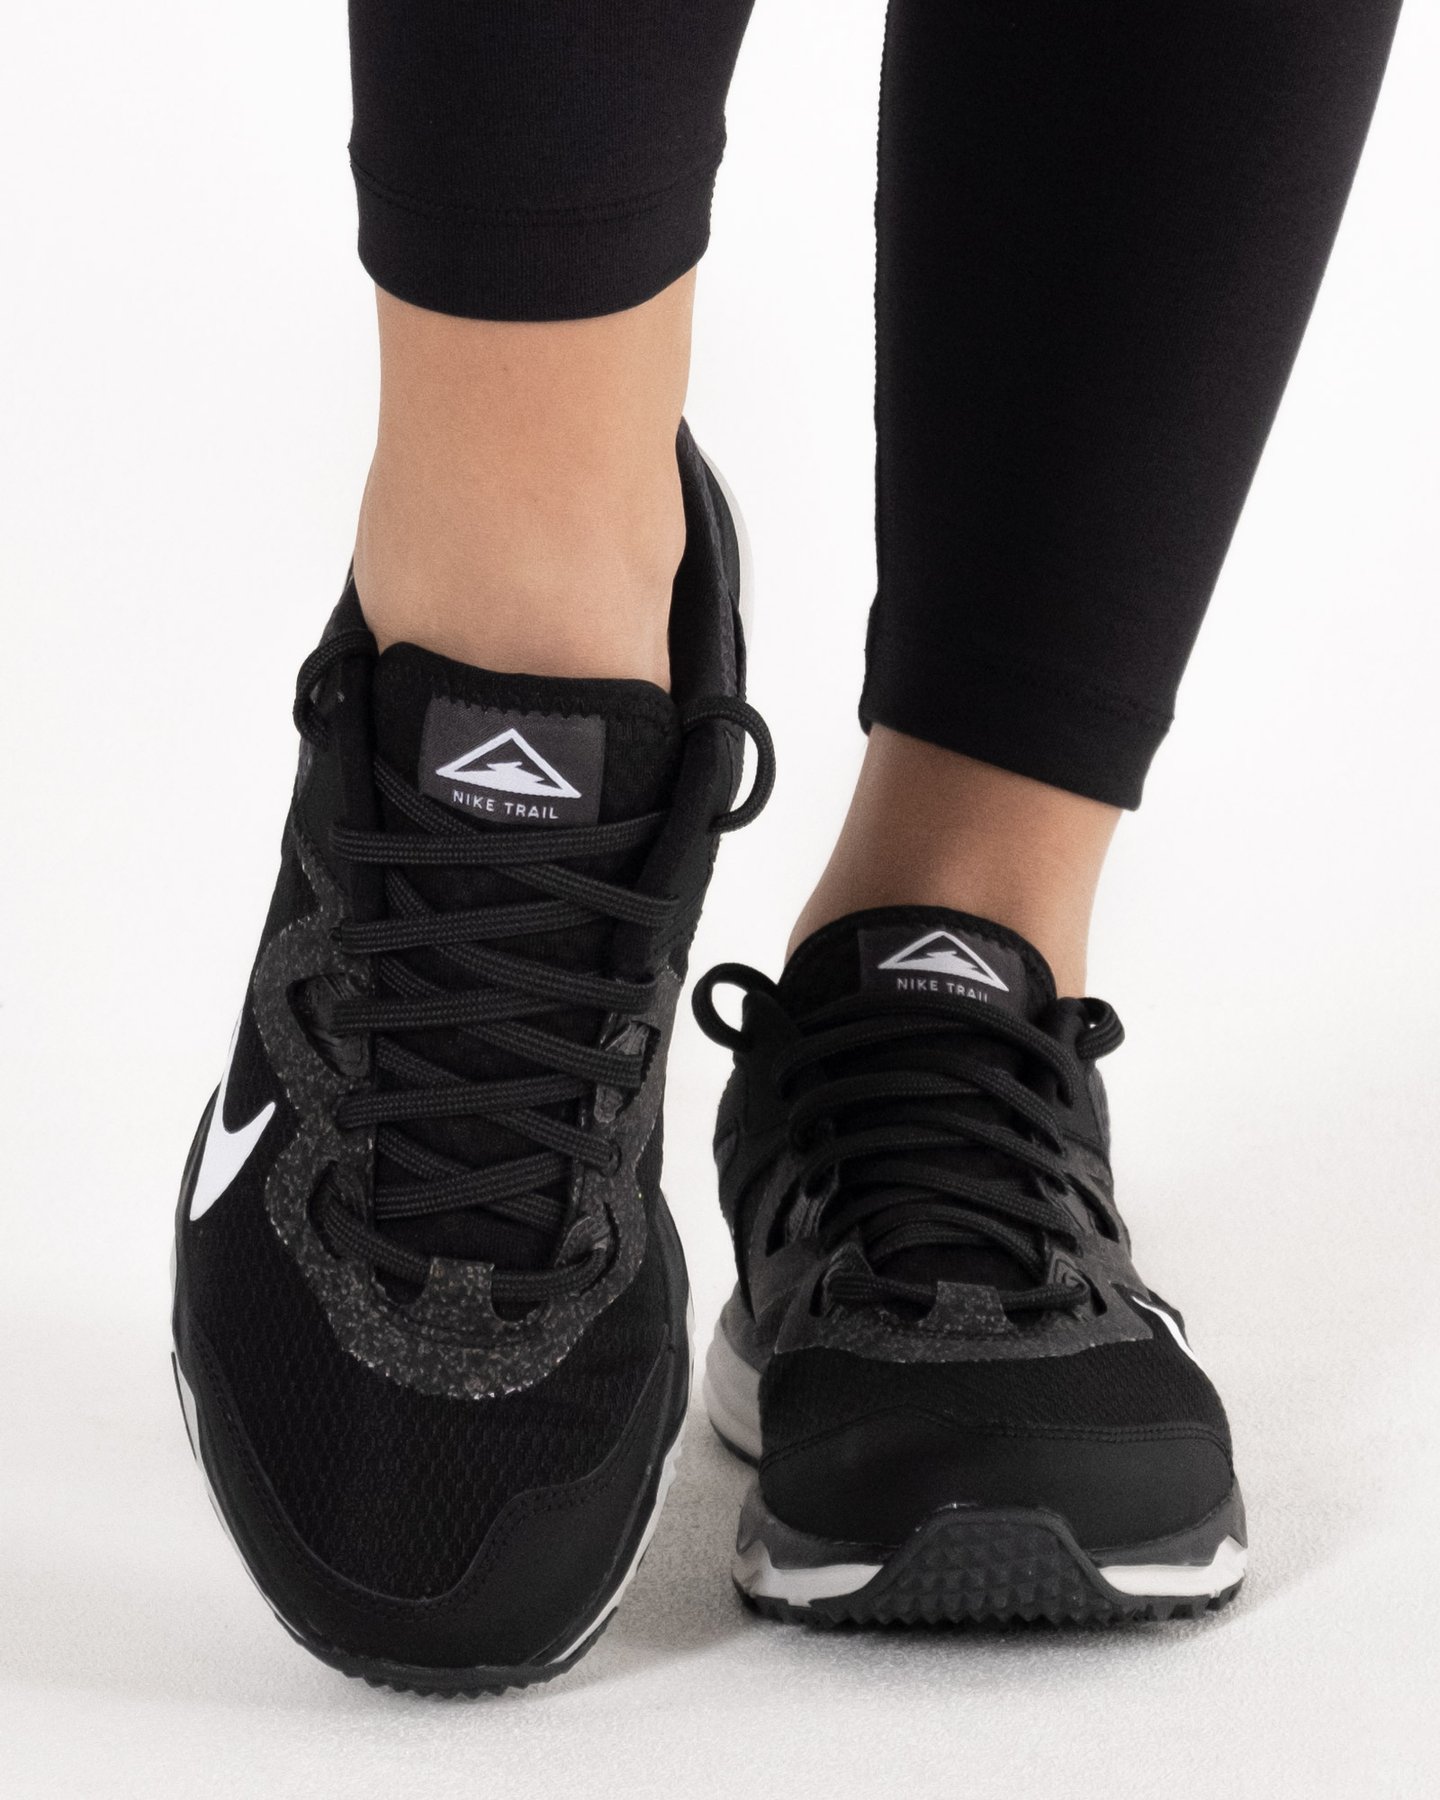 Кроссовки Nike Juniper Trail купить